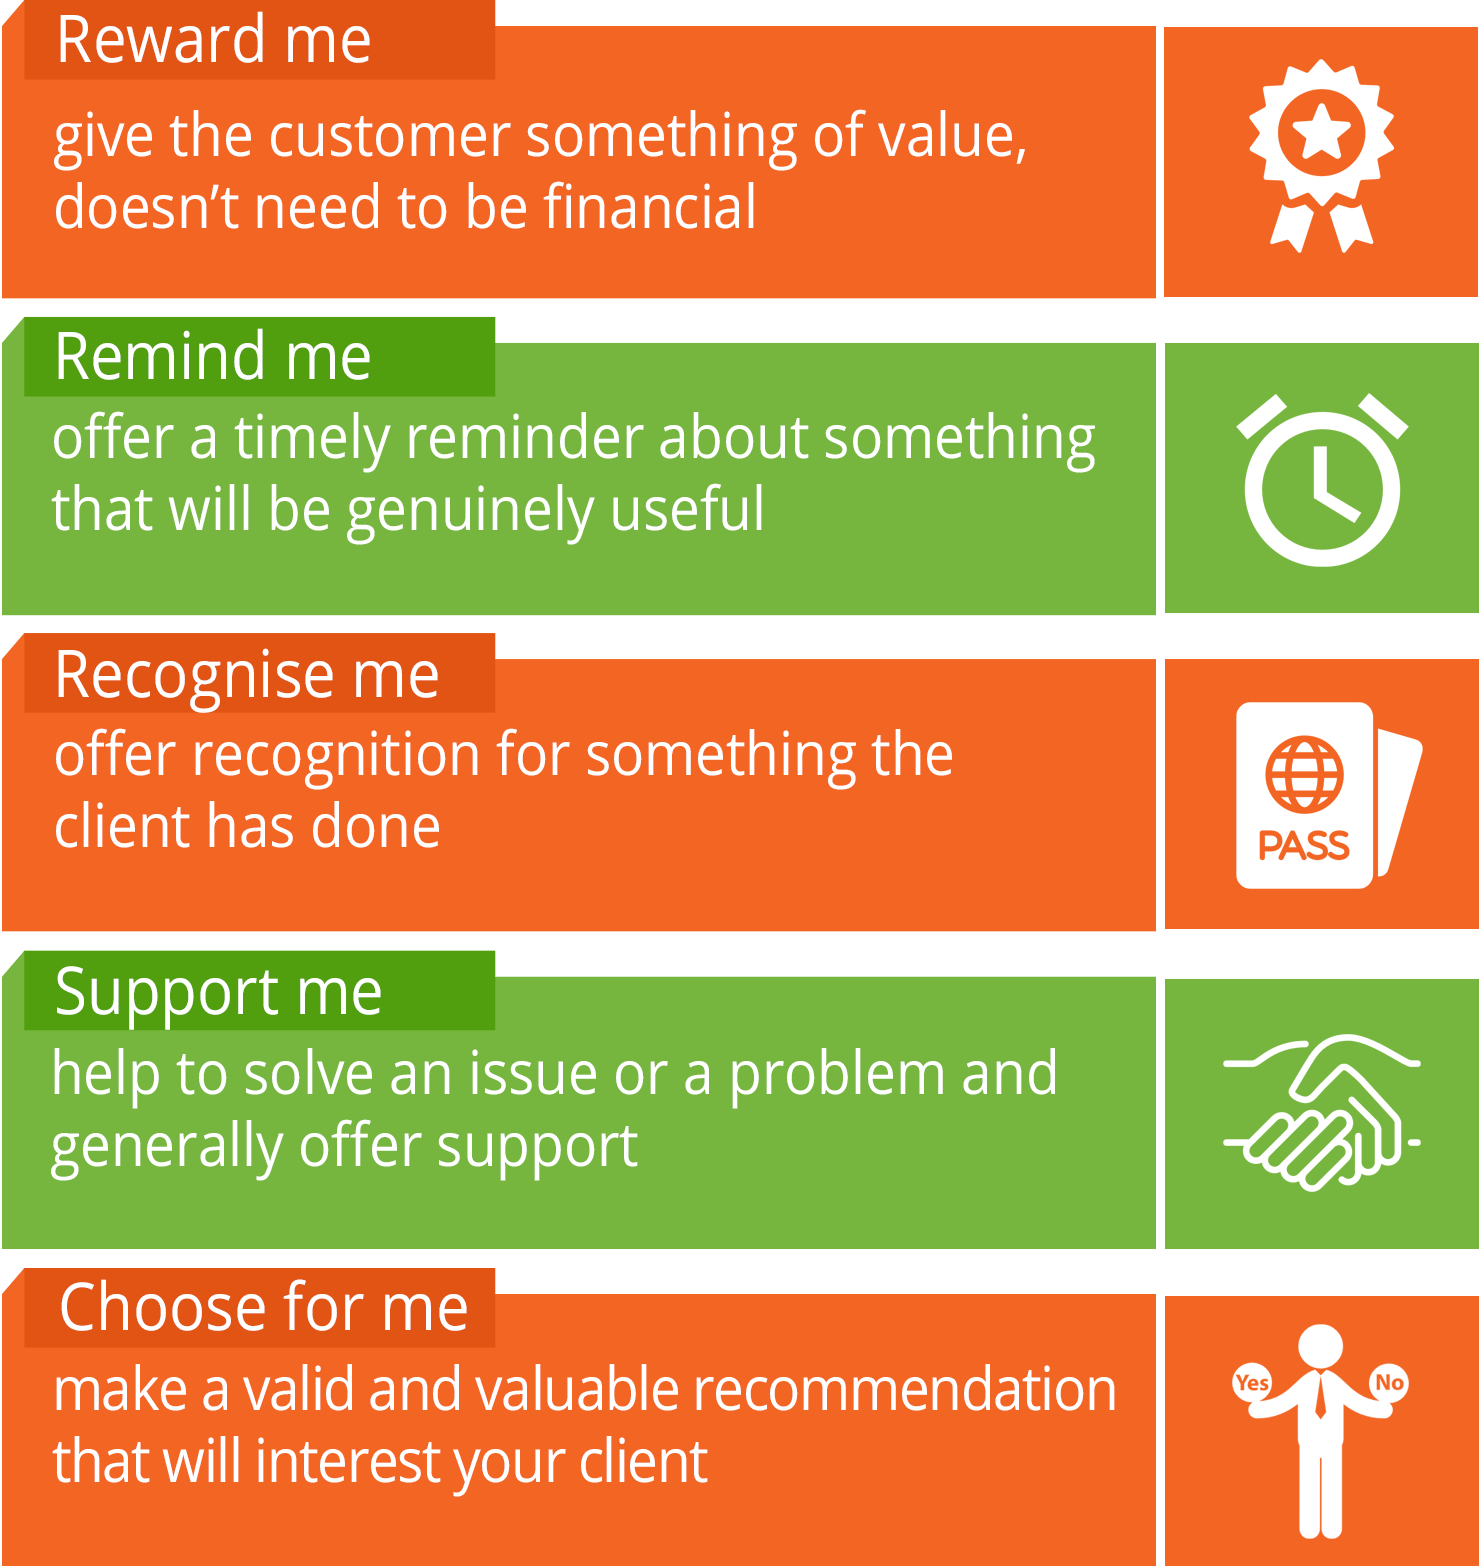 5 potential client benefits